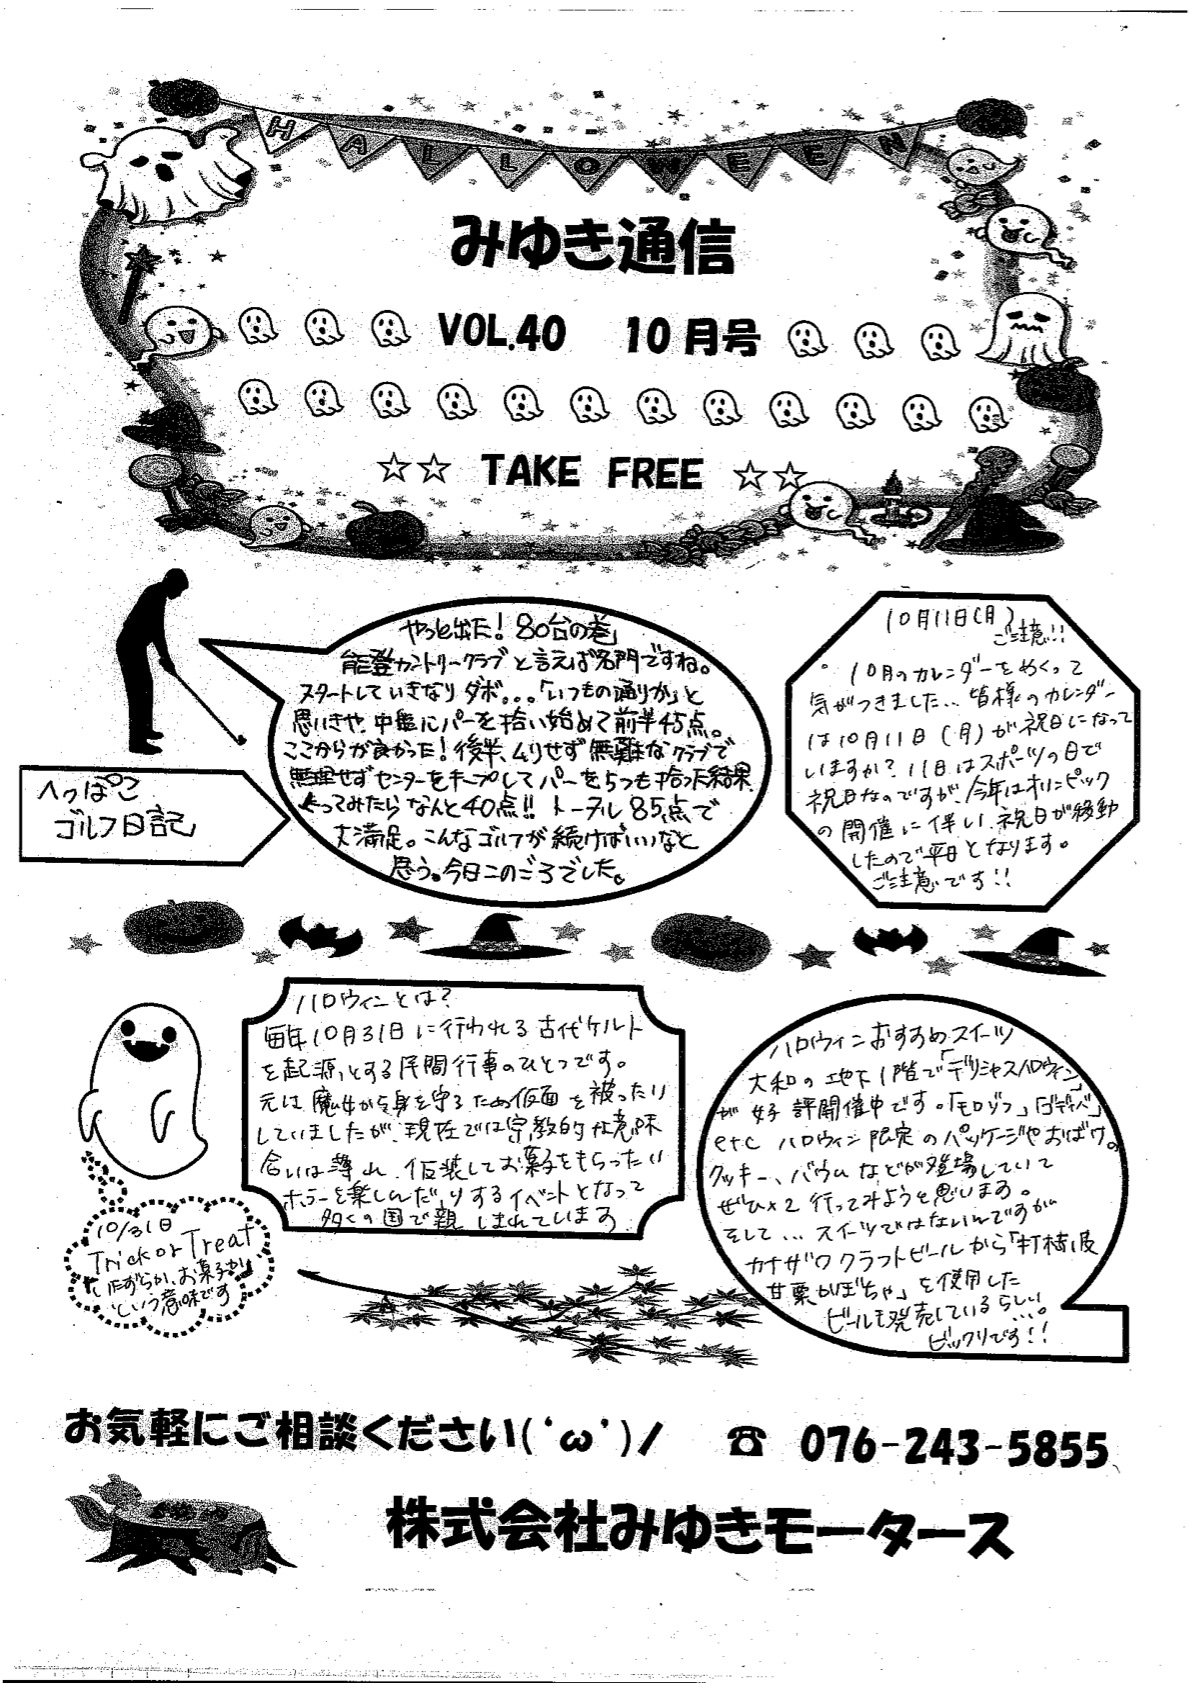 みゆき通信vol.40 10月号